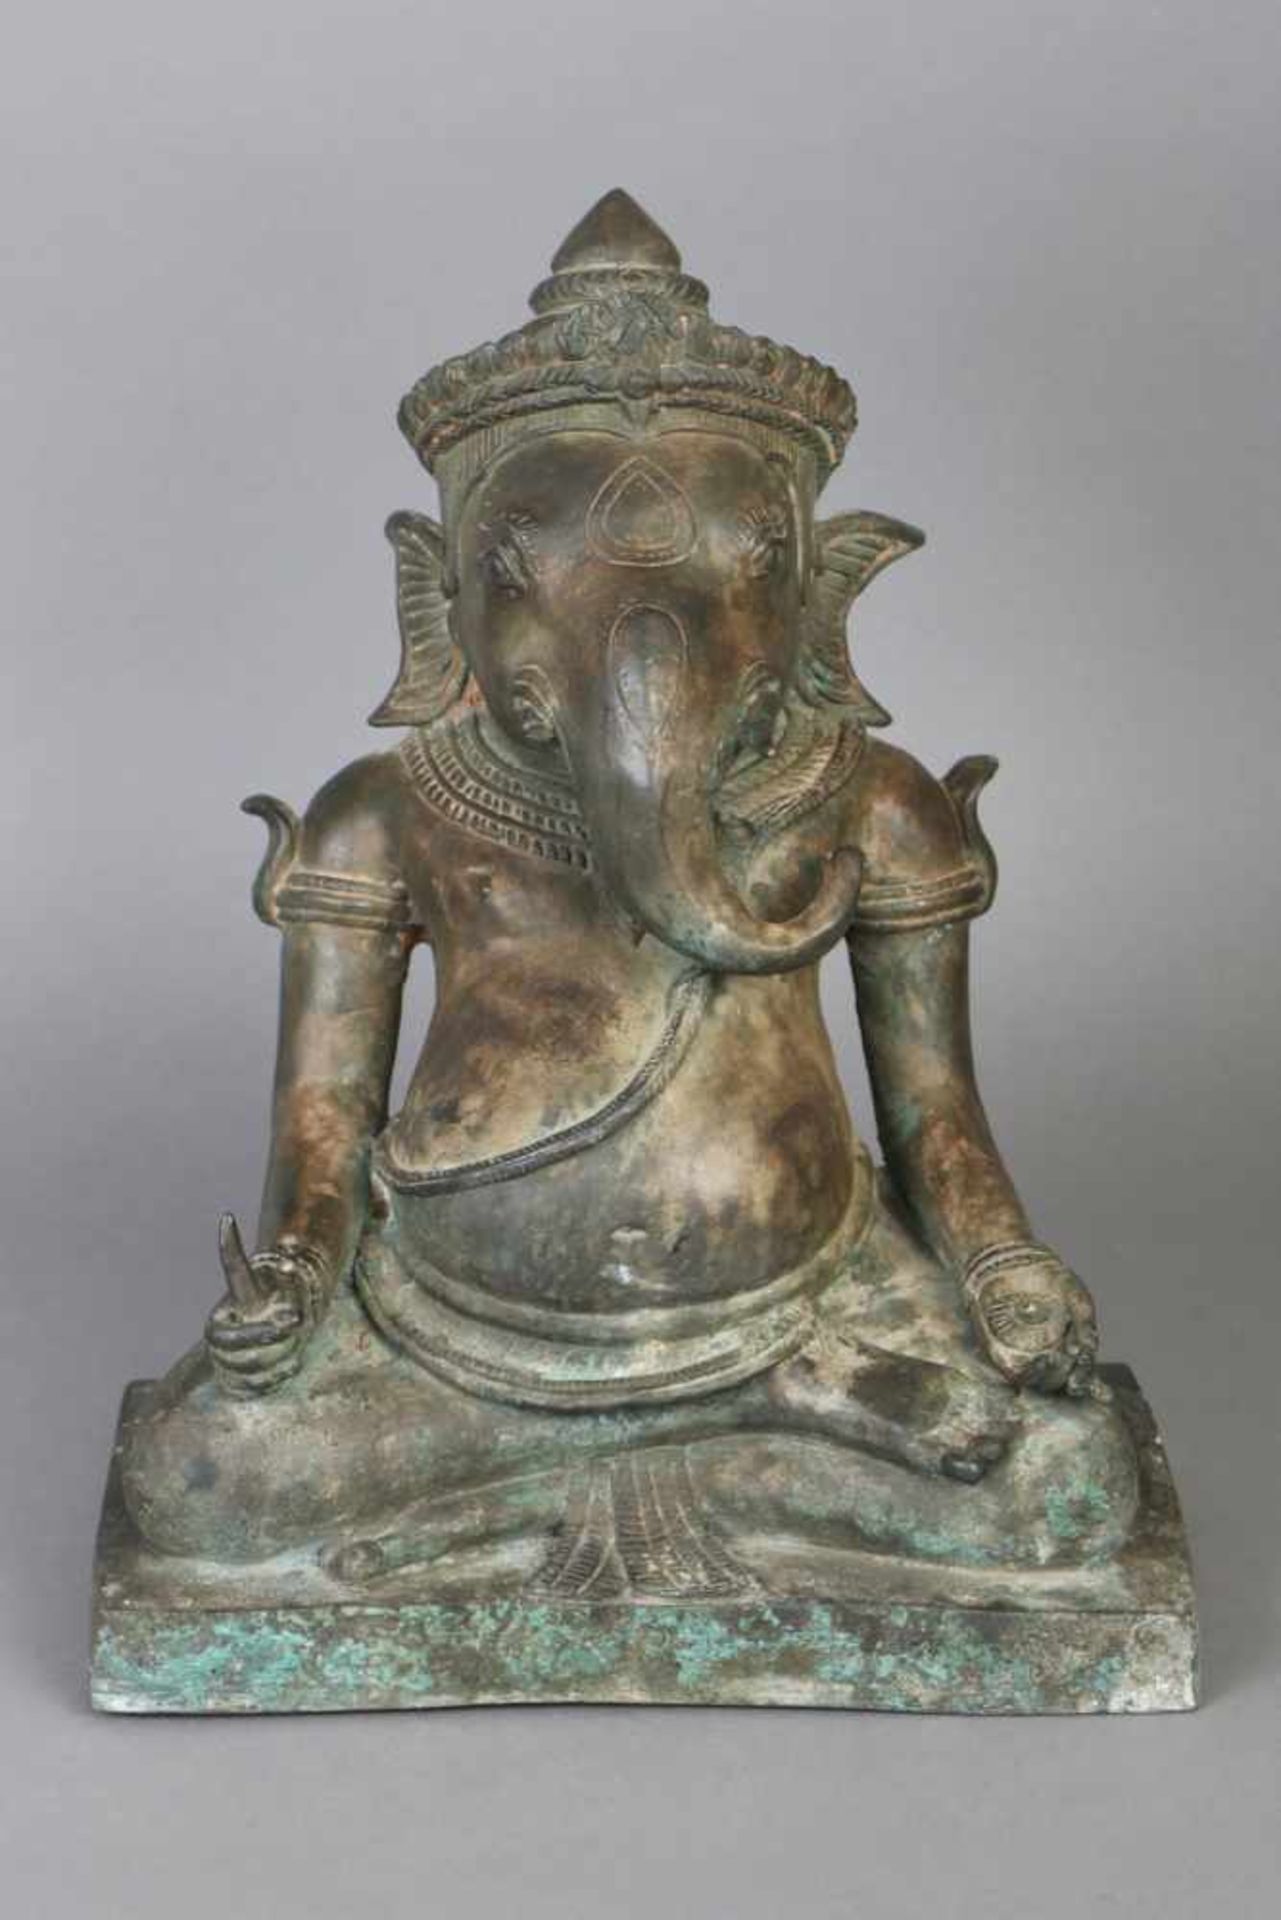 Bronzefigur ¨Ganesha¨braun-grün patiniert, sitzende Darstellung in meditativem Gestus, auf eckigem